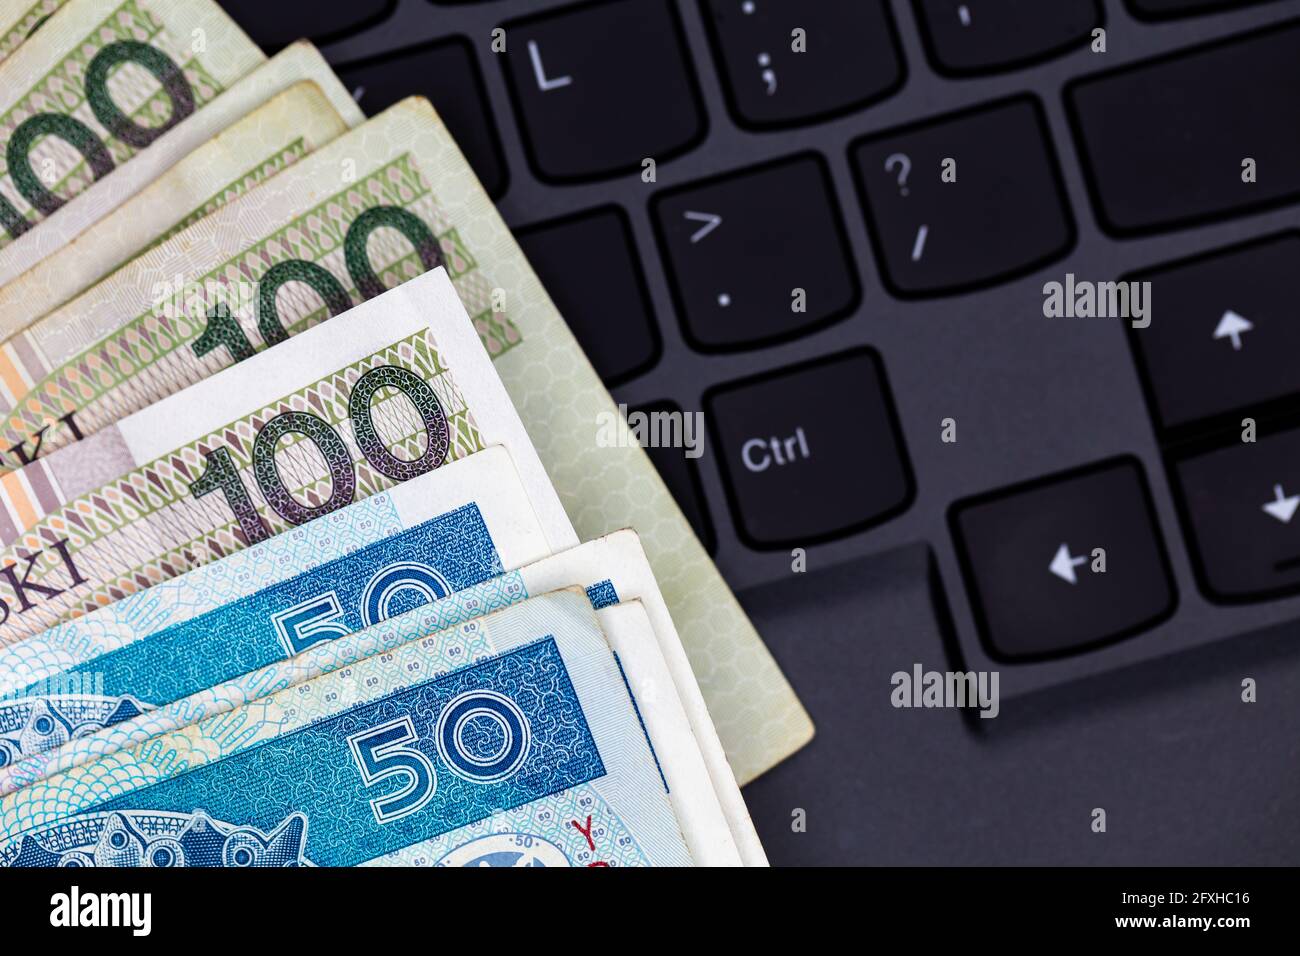 Un set di banconote da 50 e 100 PLN polacche disposte su una tastiera nera per laptop. Foto scattata in condizioni di luce artificiale e soffusa Foto Stock